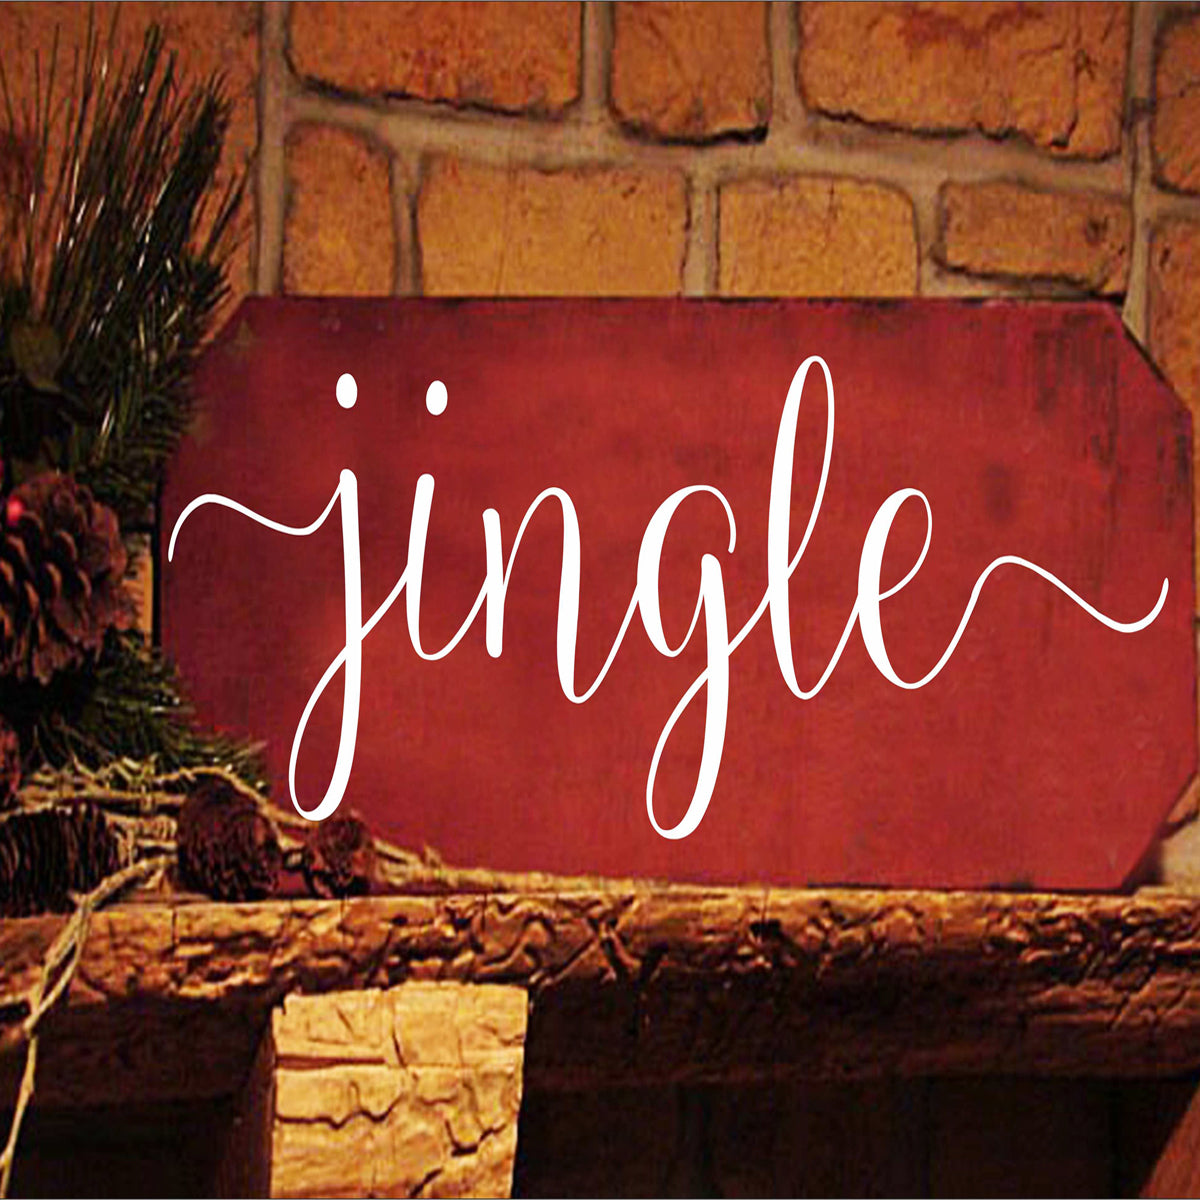 jingle Stencil 01 - Christmas Stencil - Superior Stencils